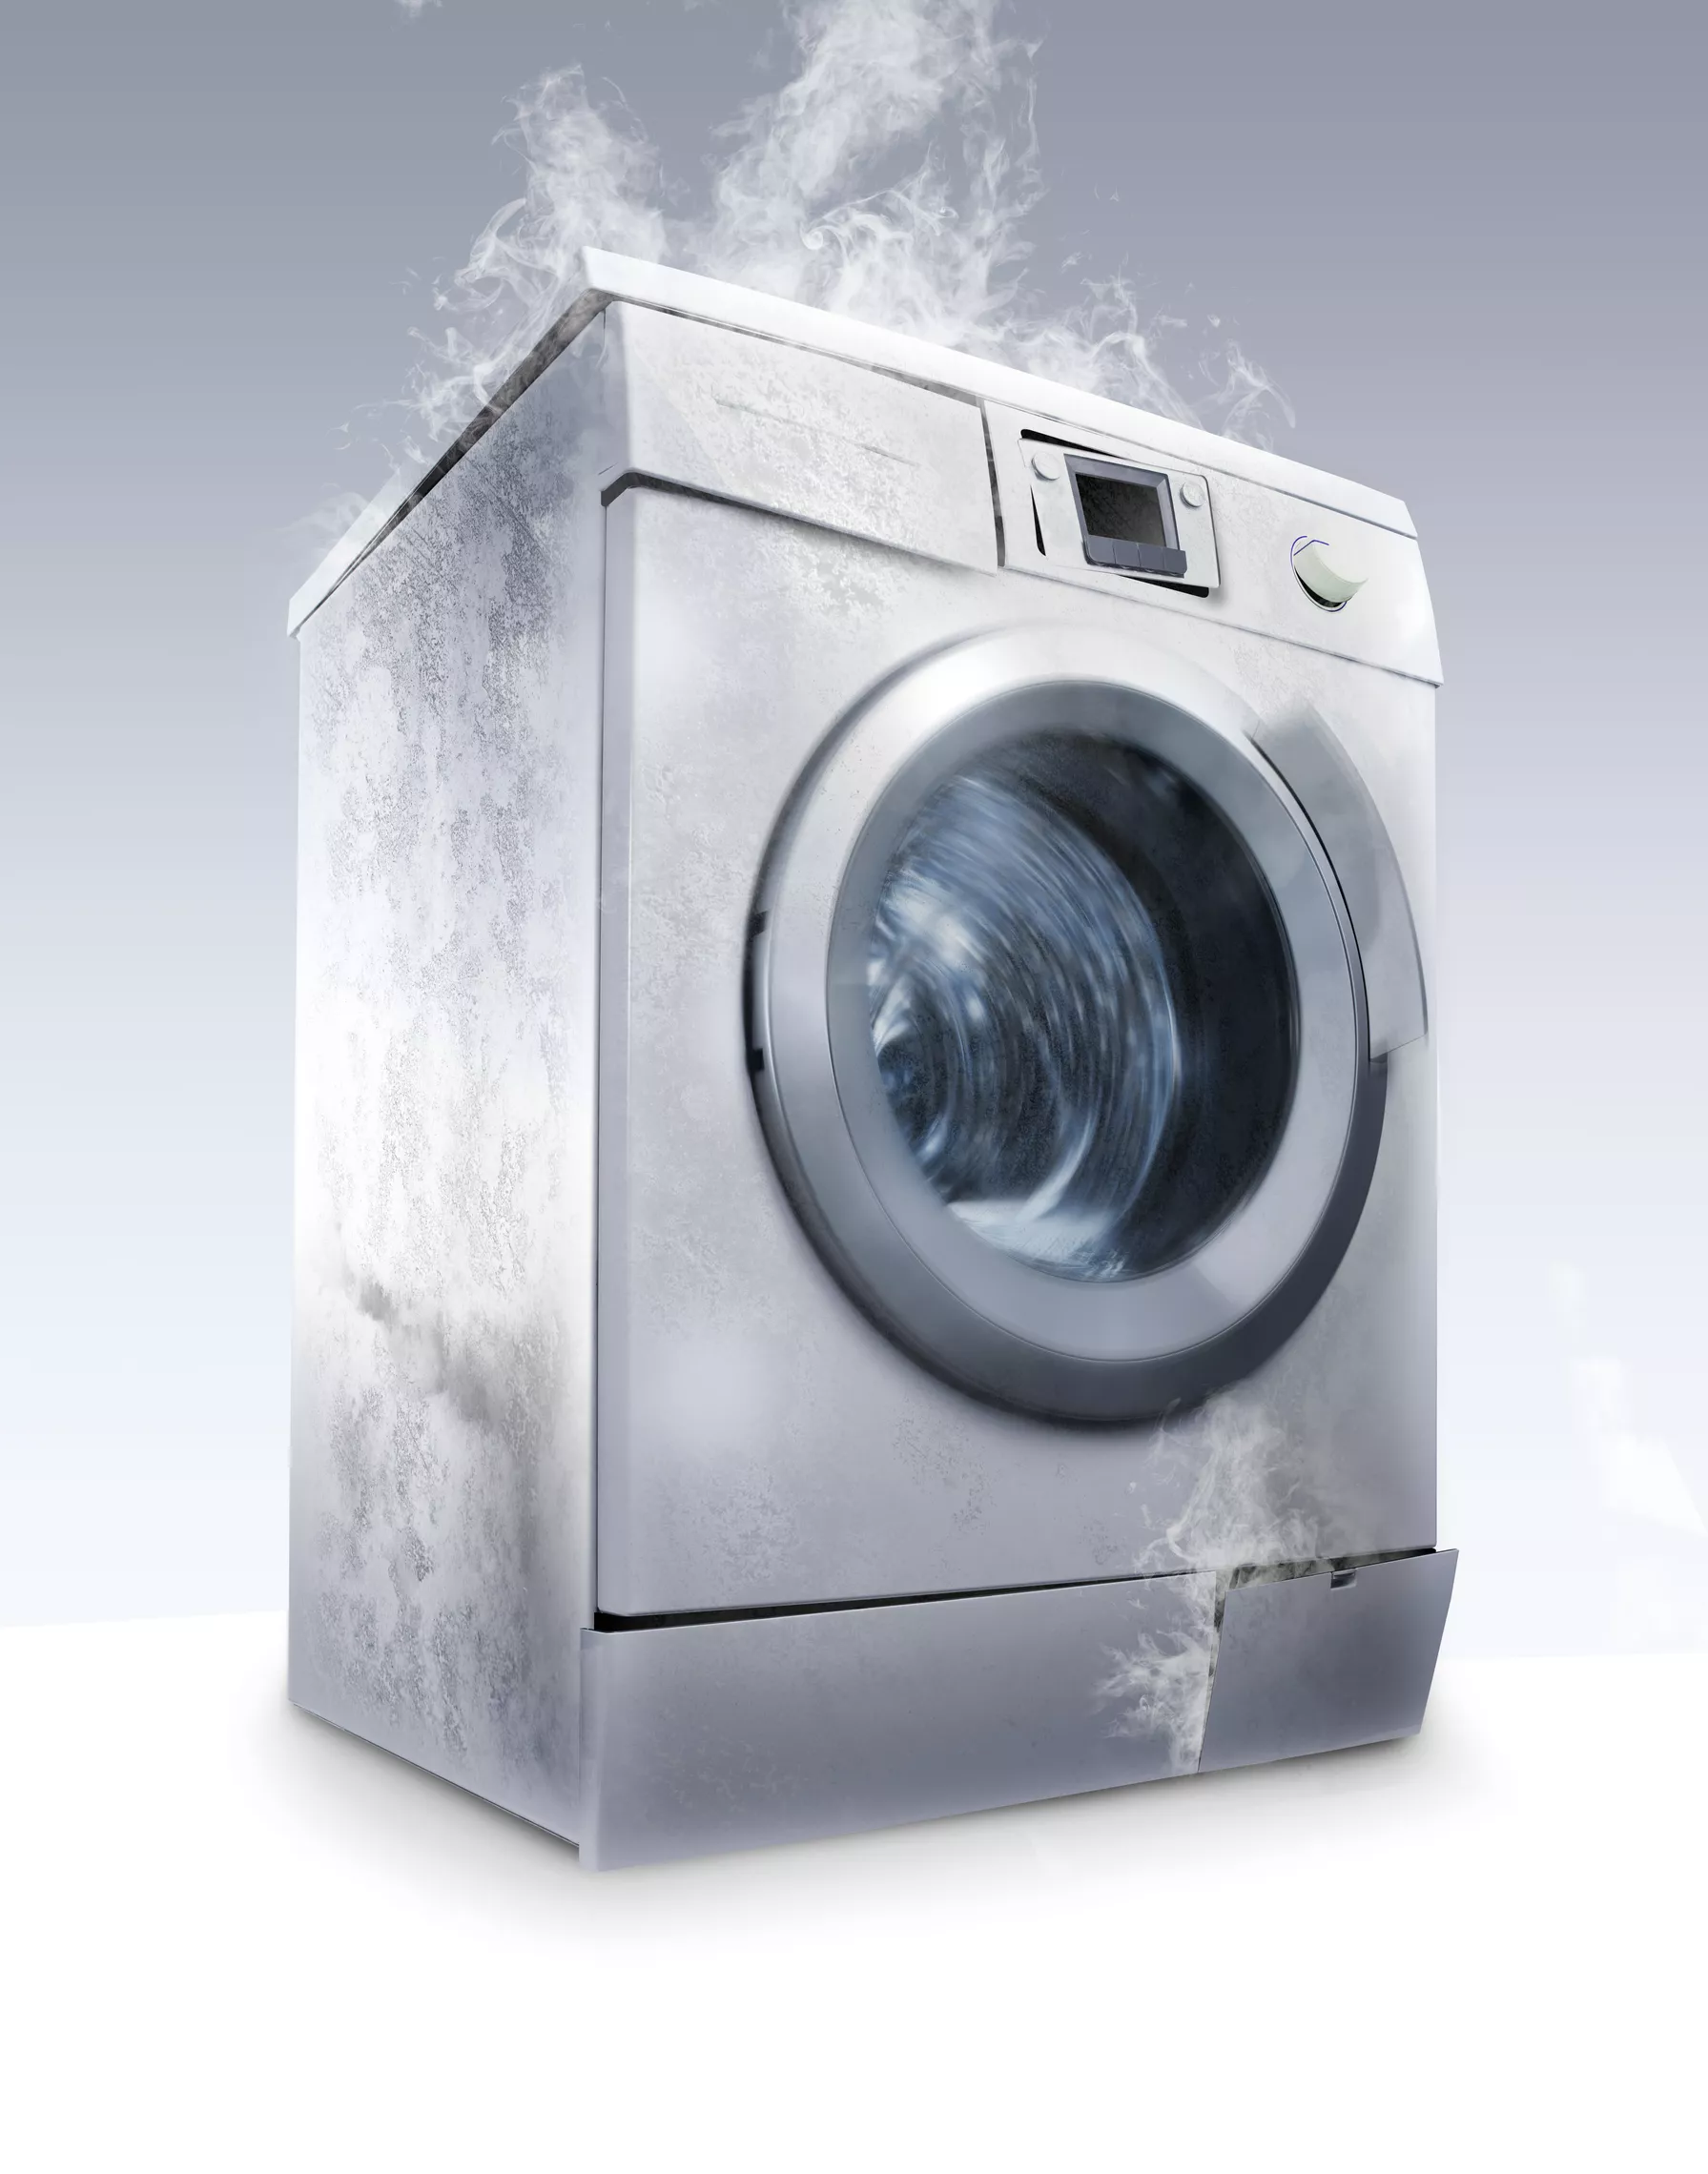 Tiếng ồn lớn do máy giặt phát ra